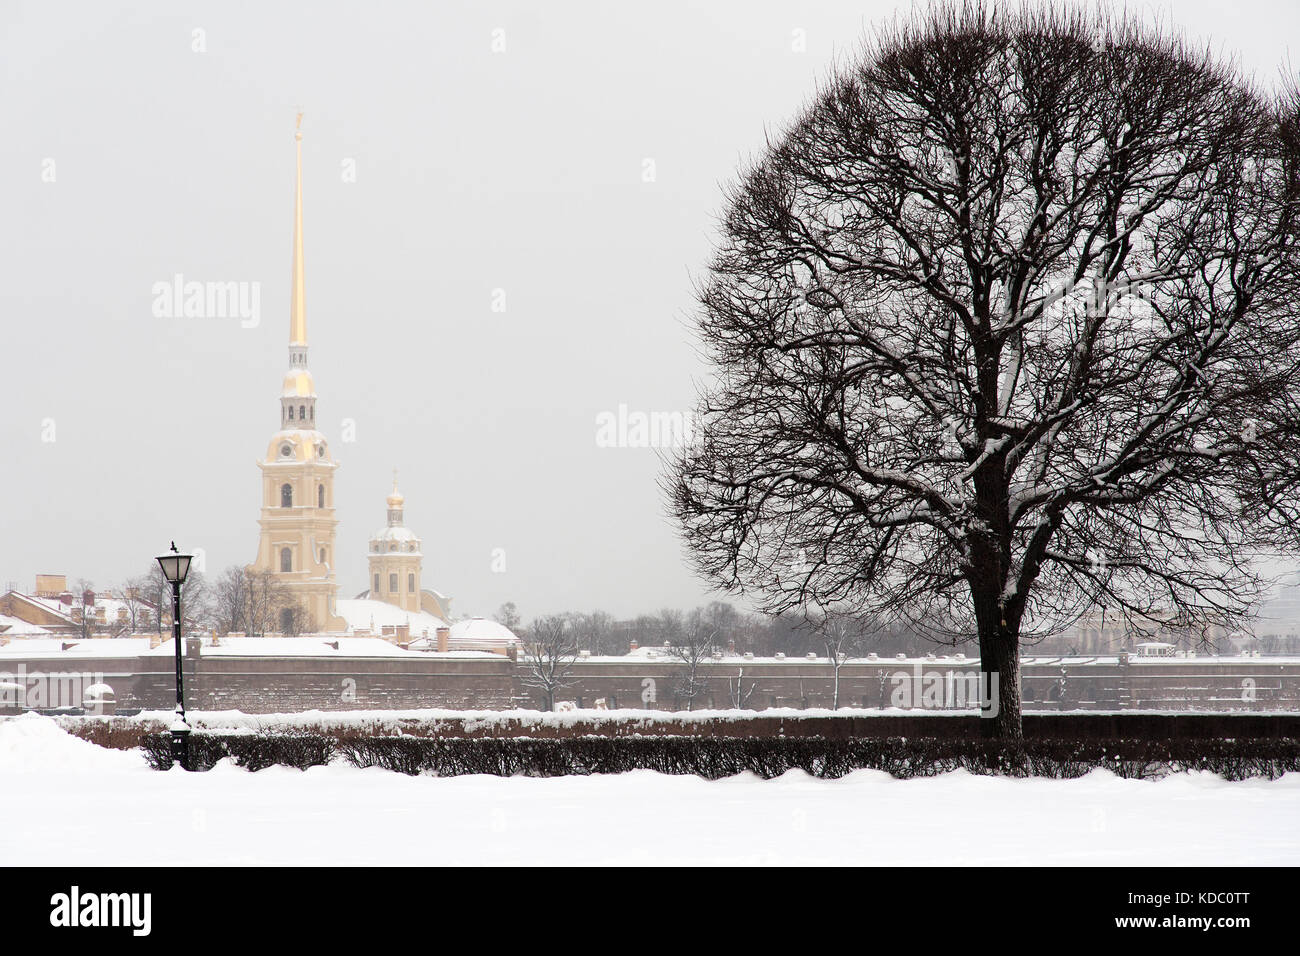 Monument touristique à saint Petersburg, Russie : la forteresse Pierre et Paul et de la cathédrale par une journée d'hiver avec beaucoup de neige autour. Banque D'Images